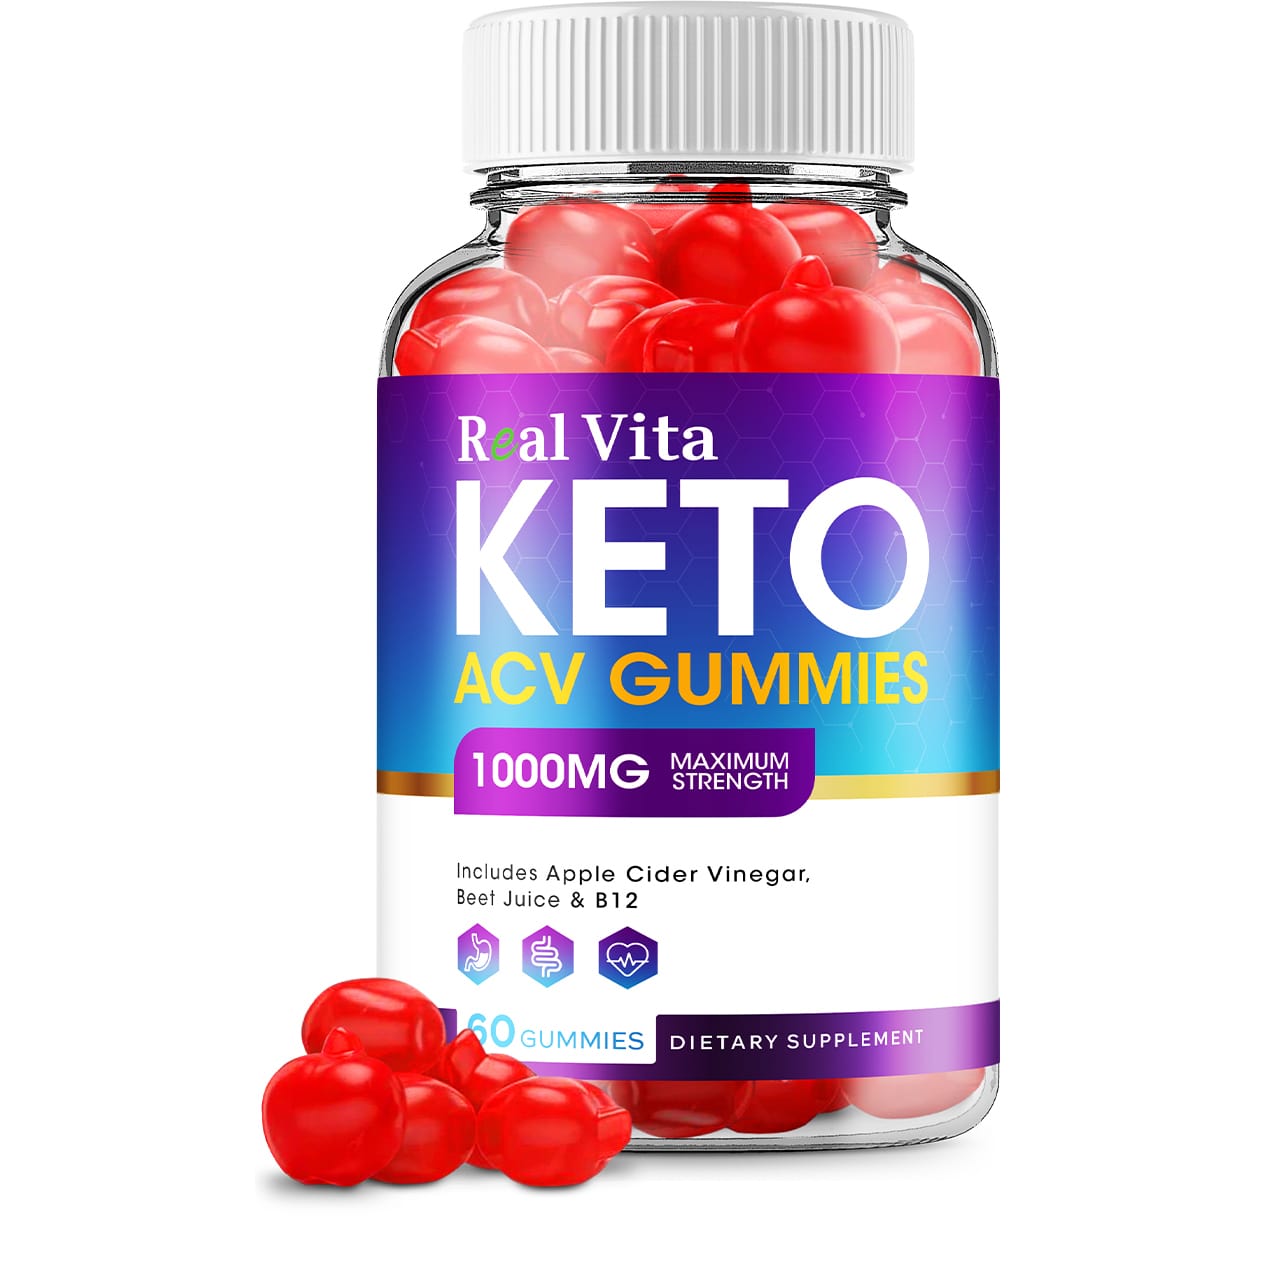 Real Vita Keto ACV Gummies